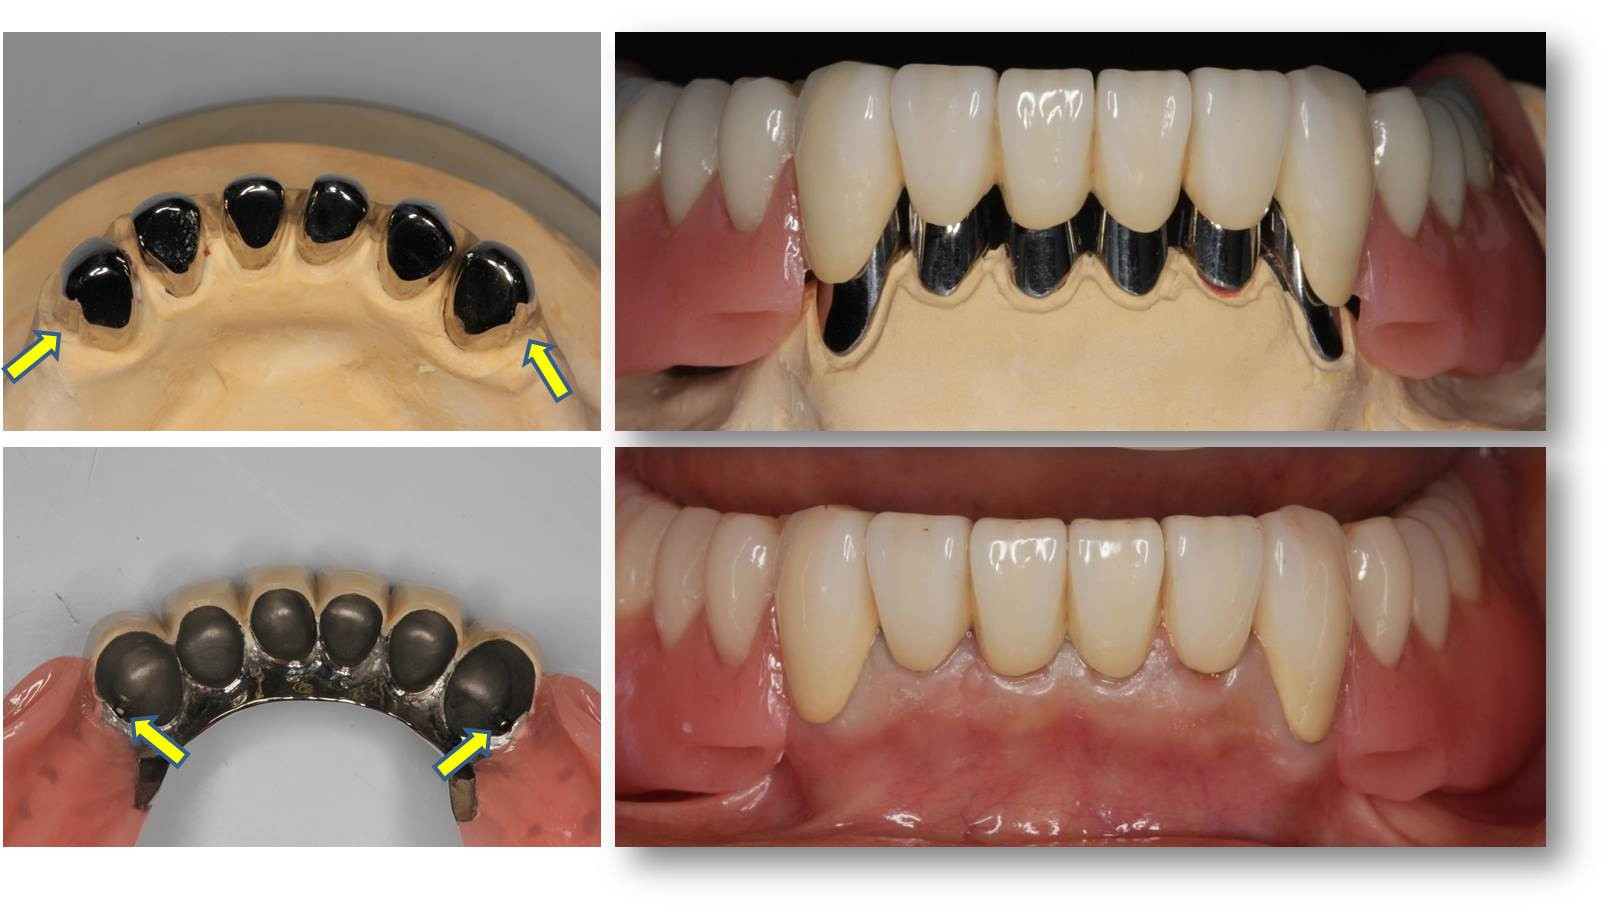 流山の歯科医院で生体にとって安全な金属「チタン」を用いた補綴治療をしております。